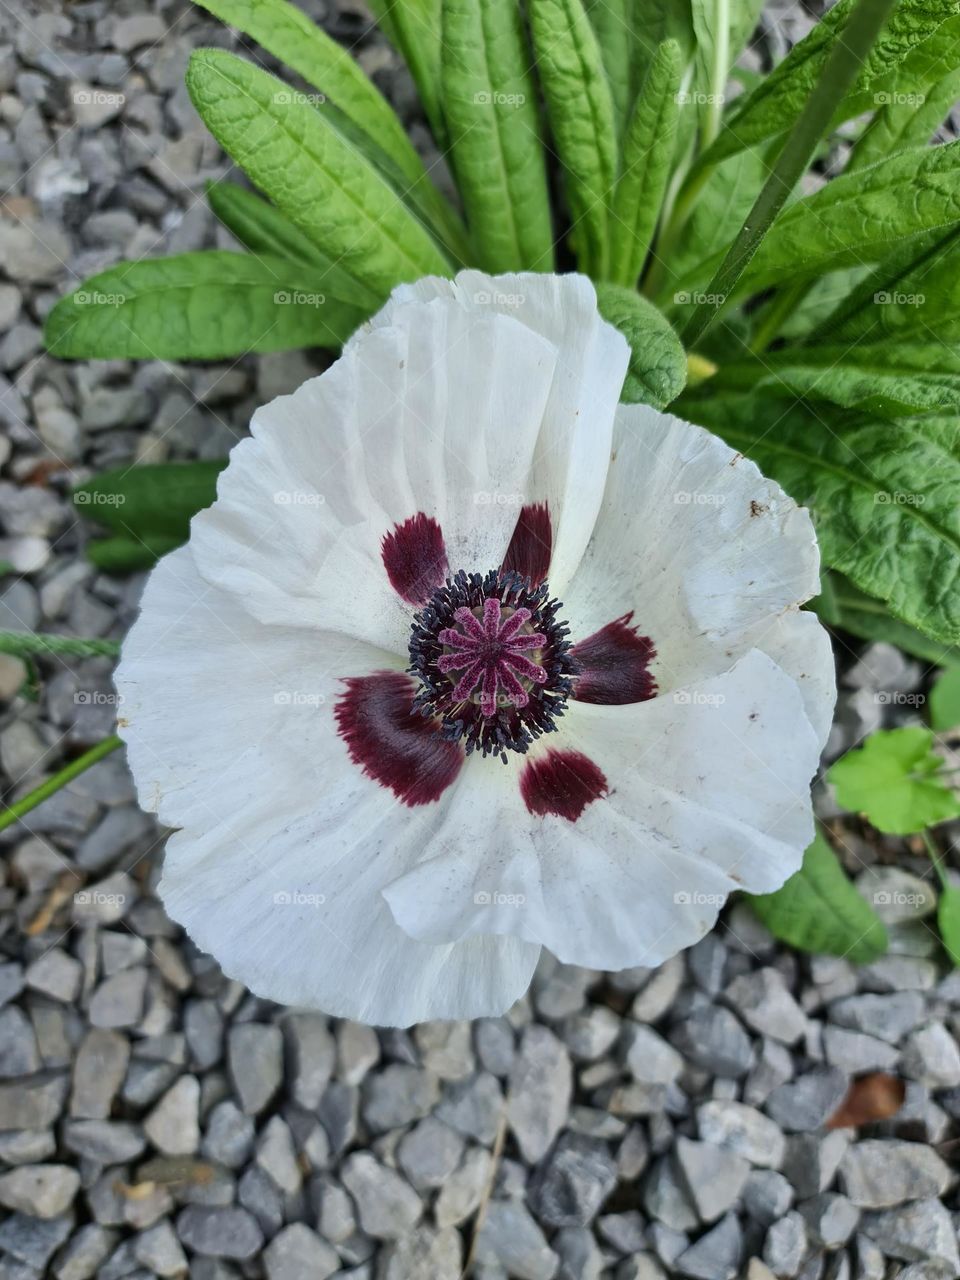 my white poppy flower